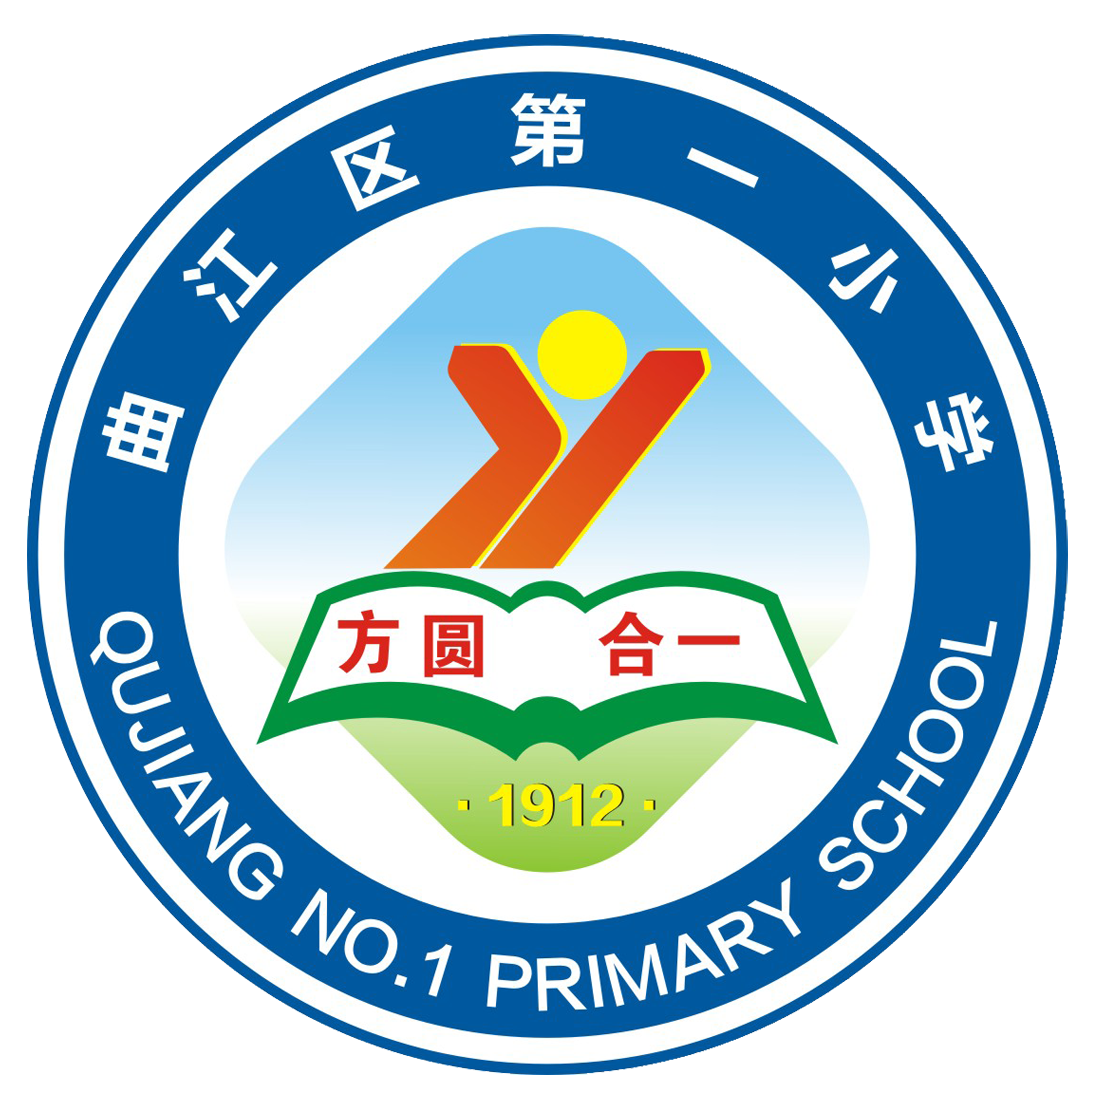 金华市青春小学logo图片